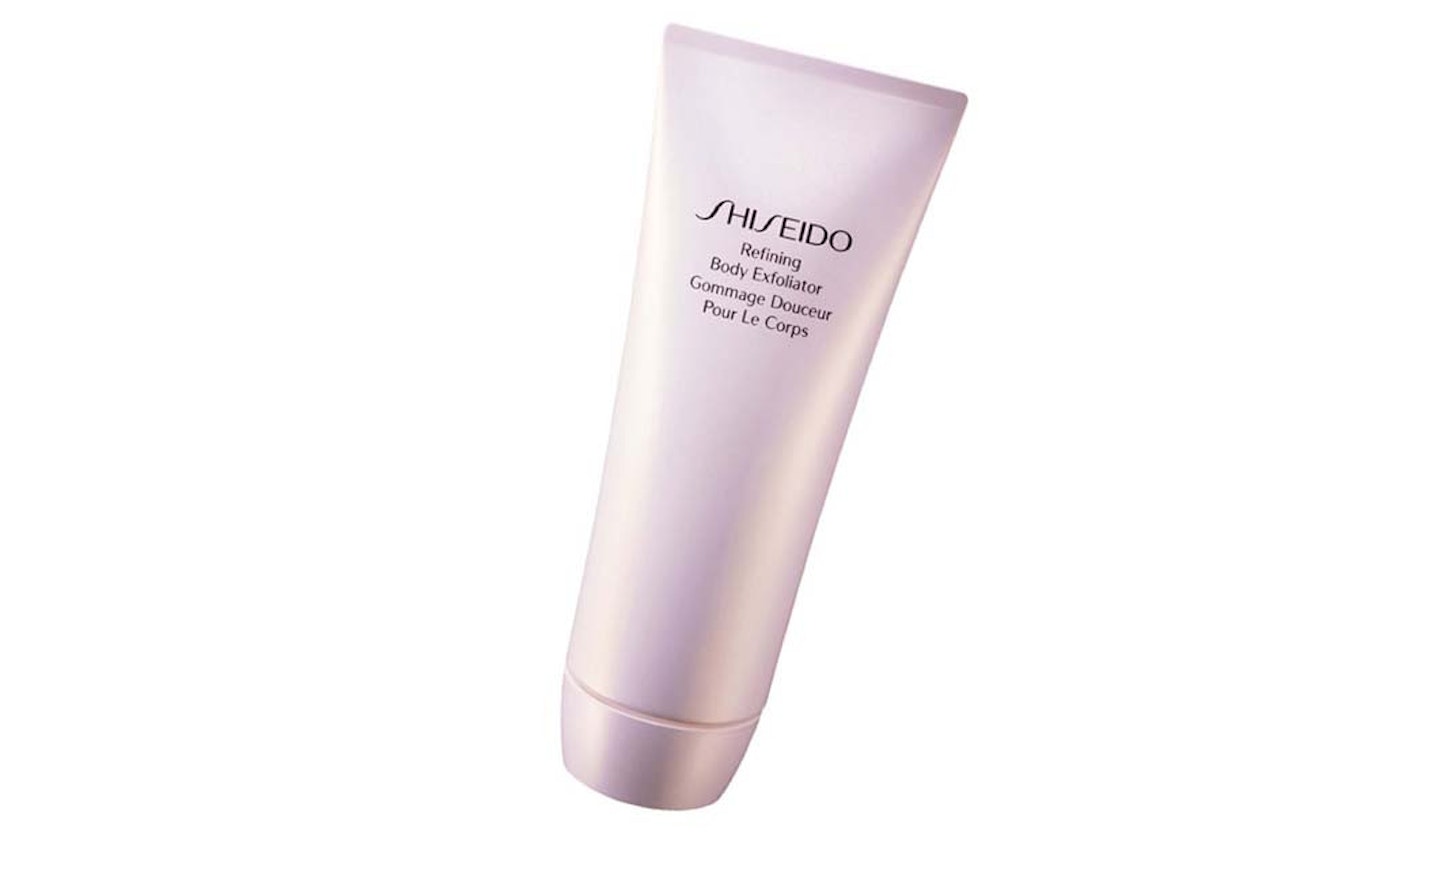 9. Shiseido Refining Body Exfoliator